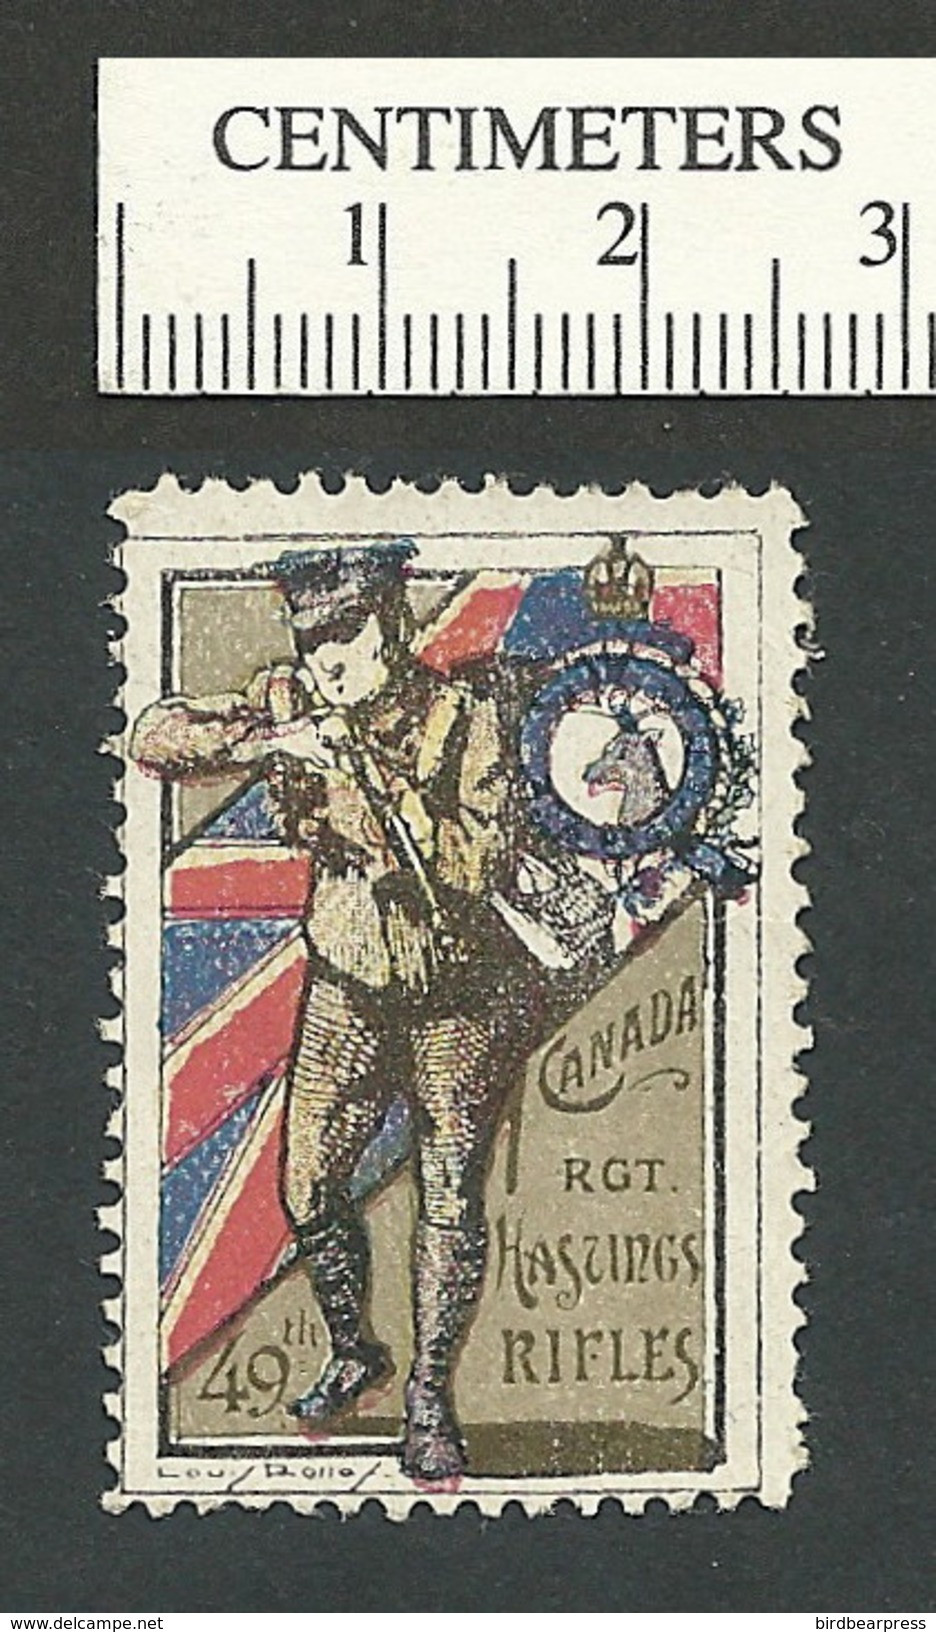 B46-45 CANADA WWI Delandre Hastings Rifles Stamp MNH Crease - Viñetas Locales Y Privadas